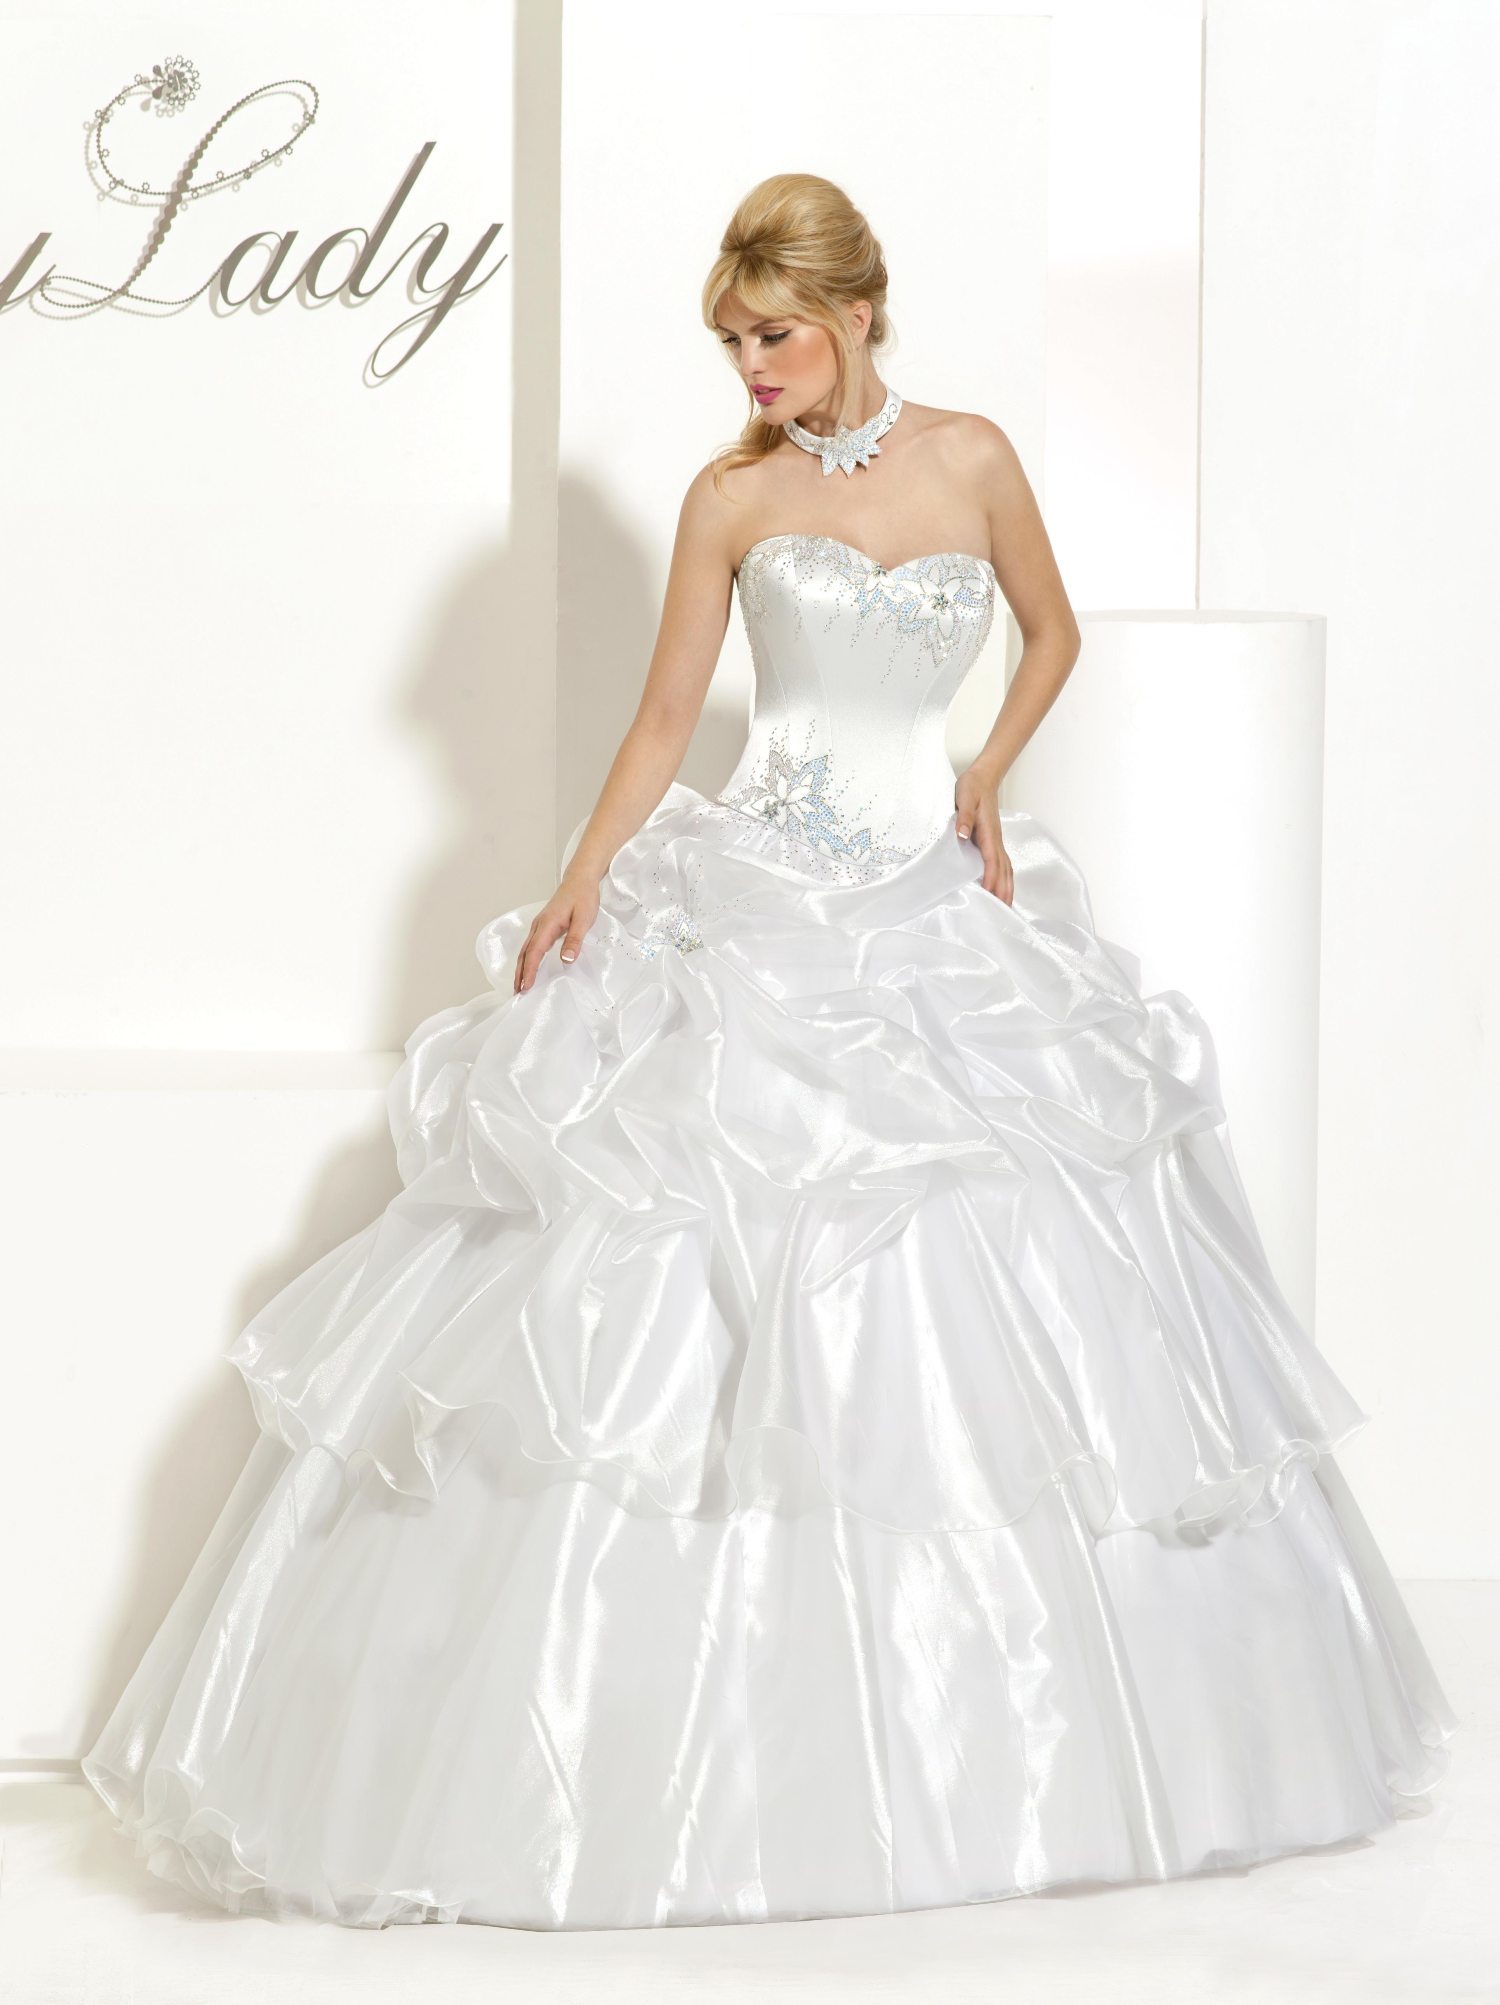 Wedding Dress - Lady Martha - Lady Martha Skirt - Lady Martha Necklace | MyLady Bridal Gown